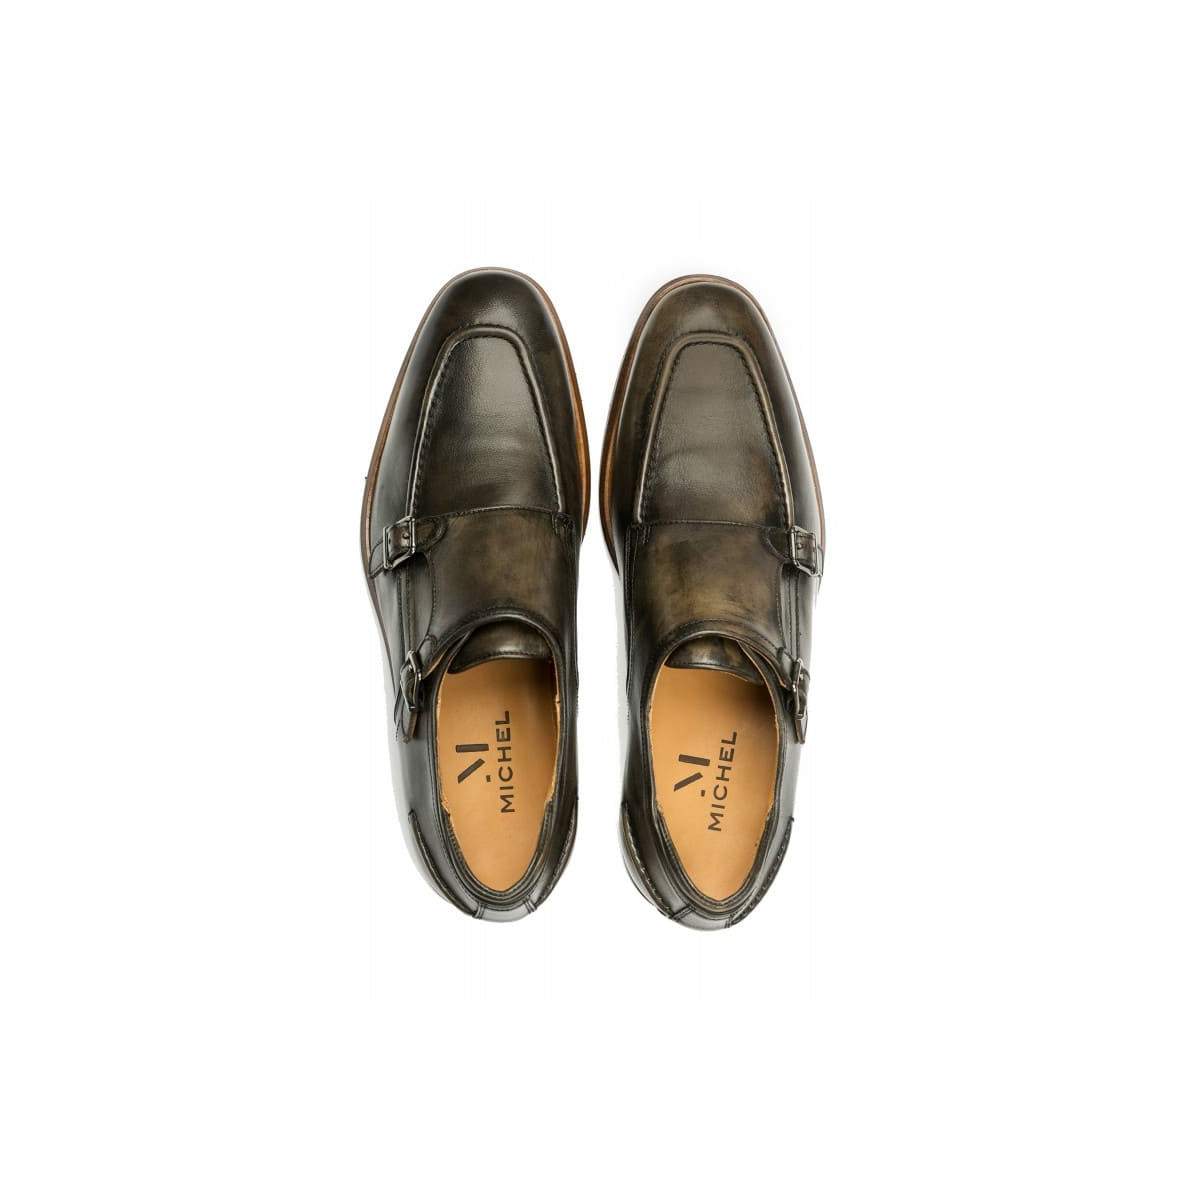 Chaussures à boucle homme en cuir patiné - Marron - michel